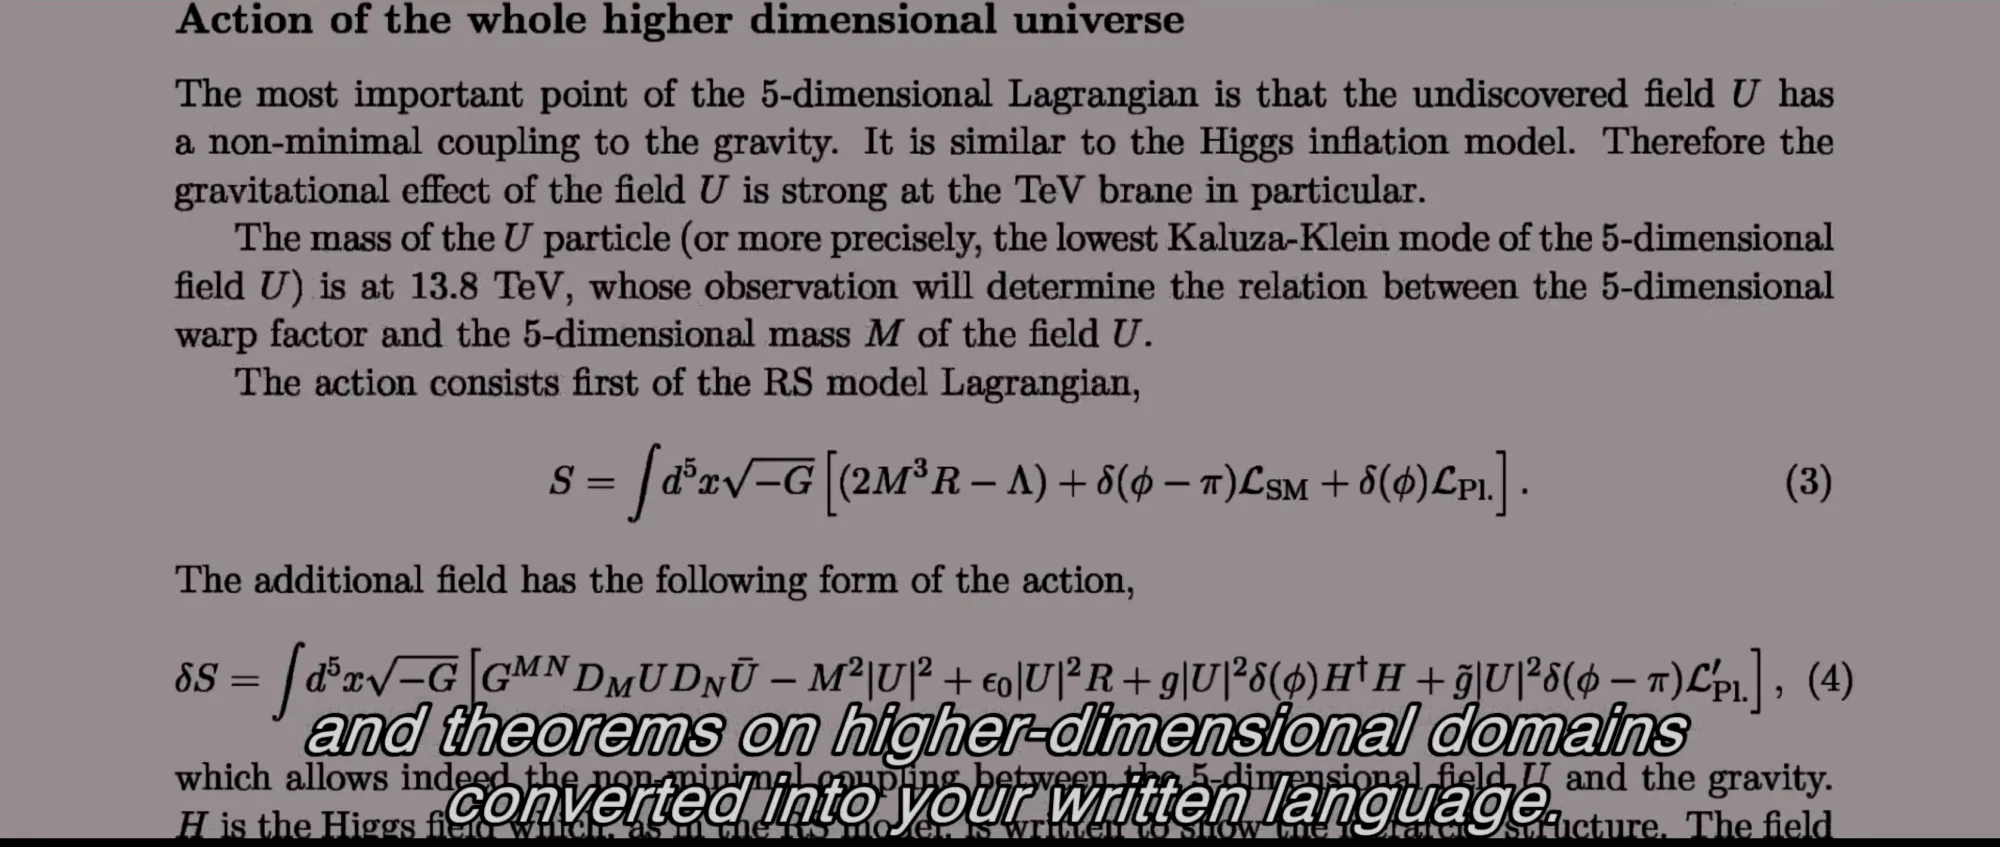 电影中的论文。第(3)式给出的作用量上面写着R.S. model，式子中积分是一个五维时空的积分，中括号里的第一个圆括号里是描述引力和宇宙学常数的部分，而第二项有一个delta函数，它是用来将标准模型也就是我们生活中的物理局域化在距离原点pi的位置，这就是TeV膜的位置。而最后一项则是局域化在原点的普朗克膜上的物理。